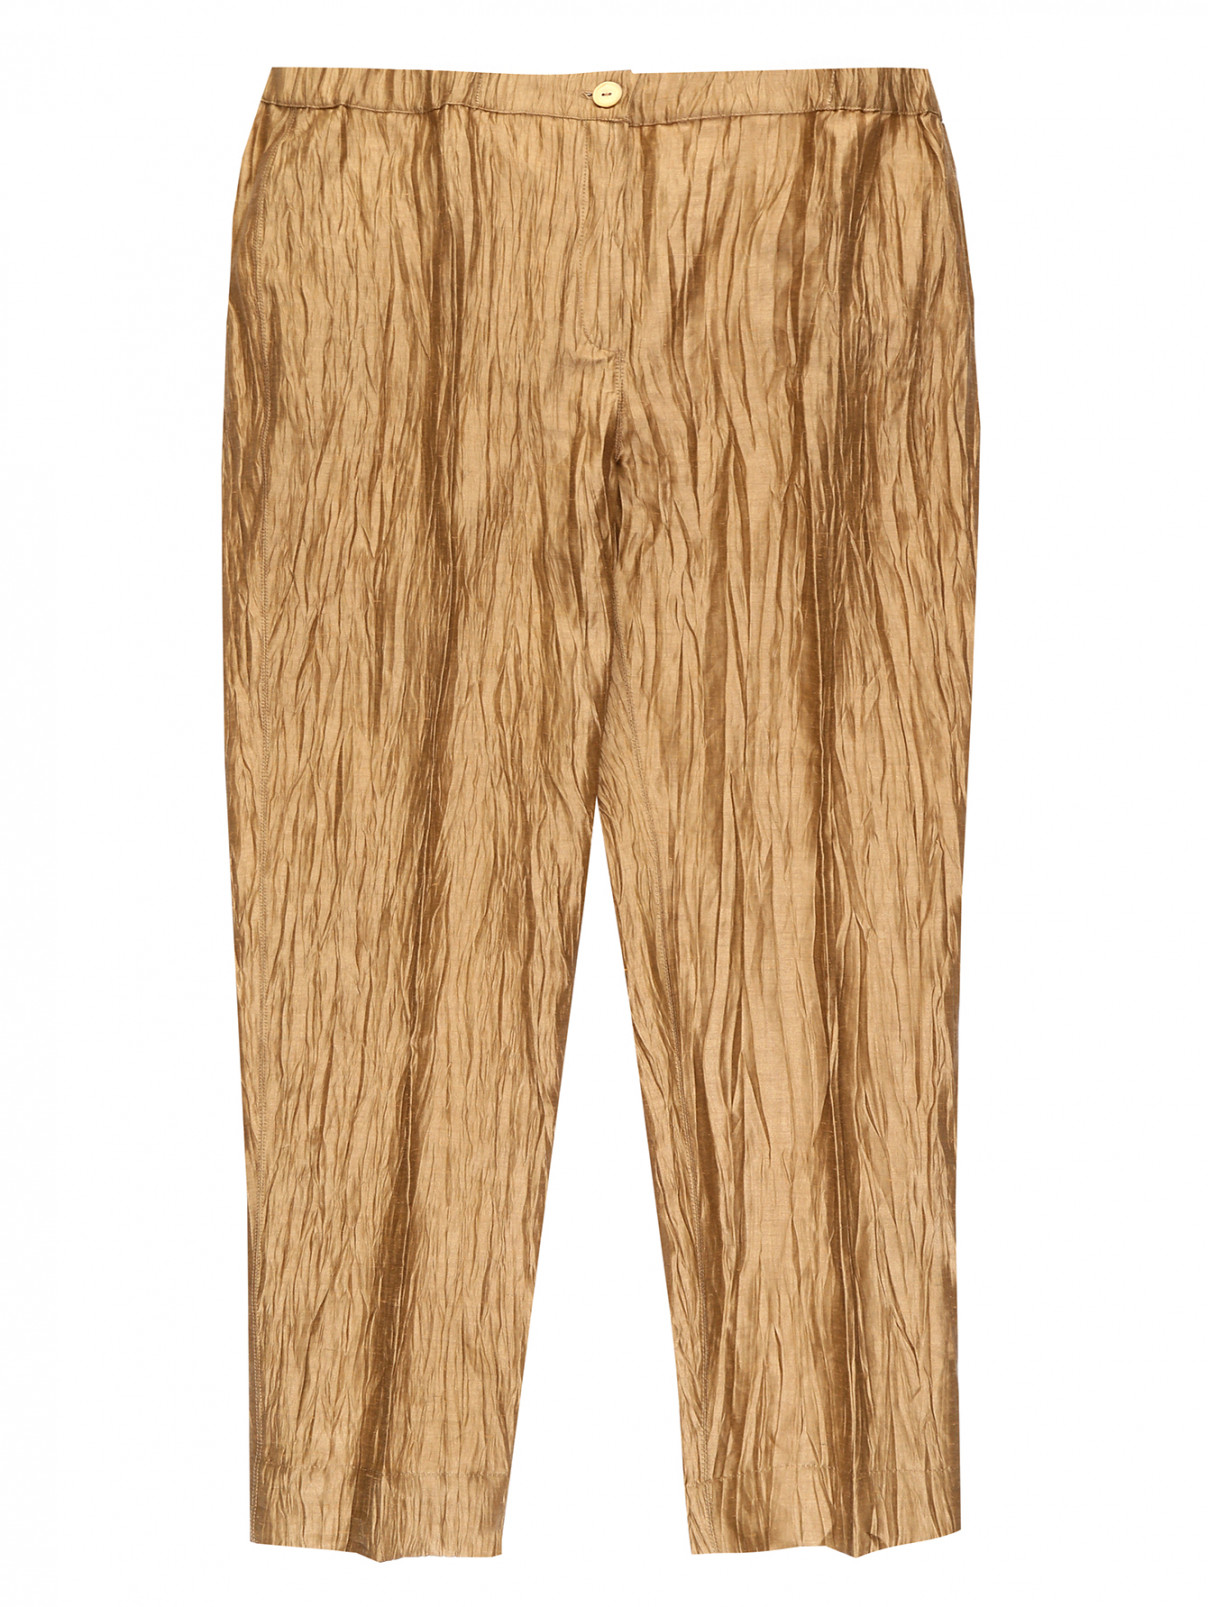 Жатые брюки из льна и шелка Marina Rinaldi  –  Общий вид  – Цвет:  Золотой